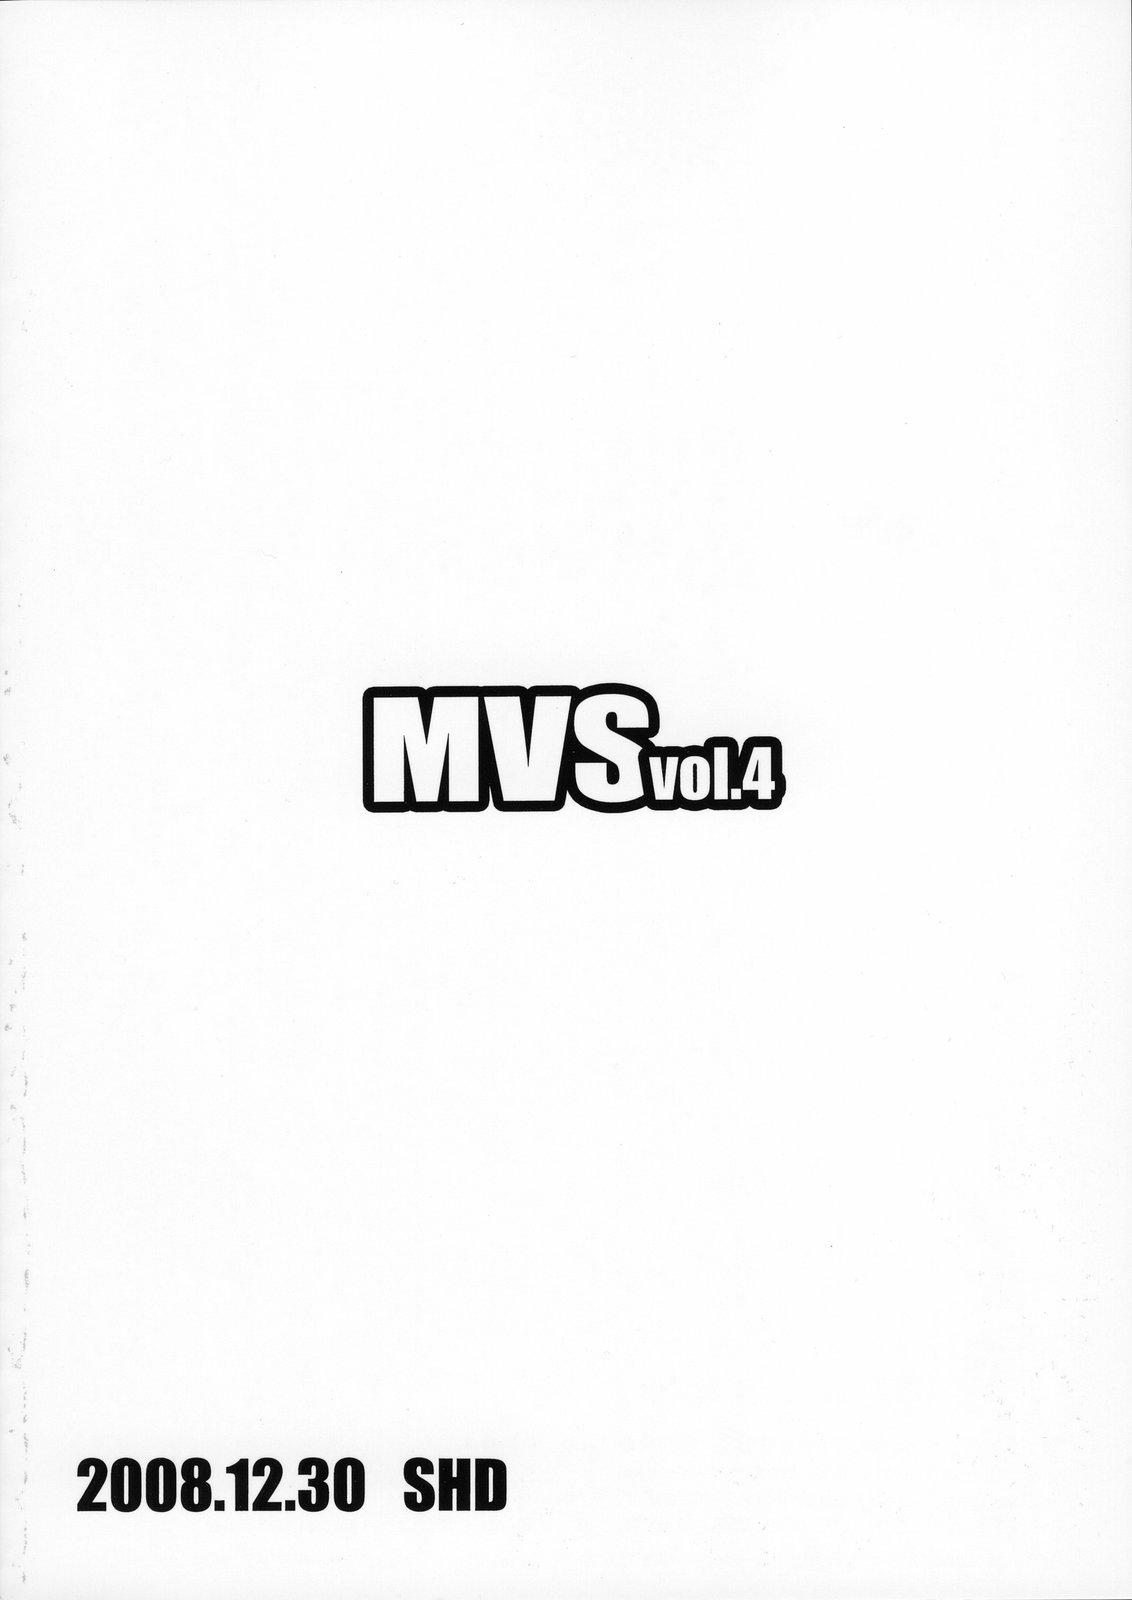 [SHD] MVS vol.4 (King of Fighters) 